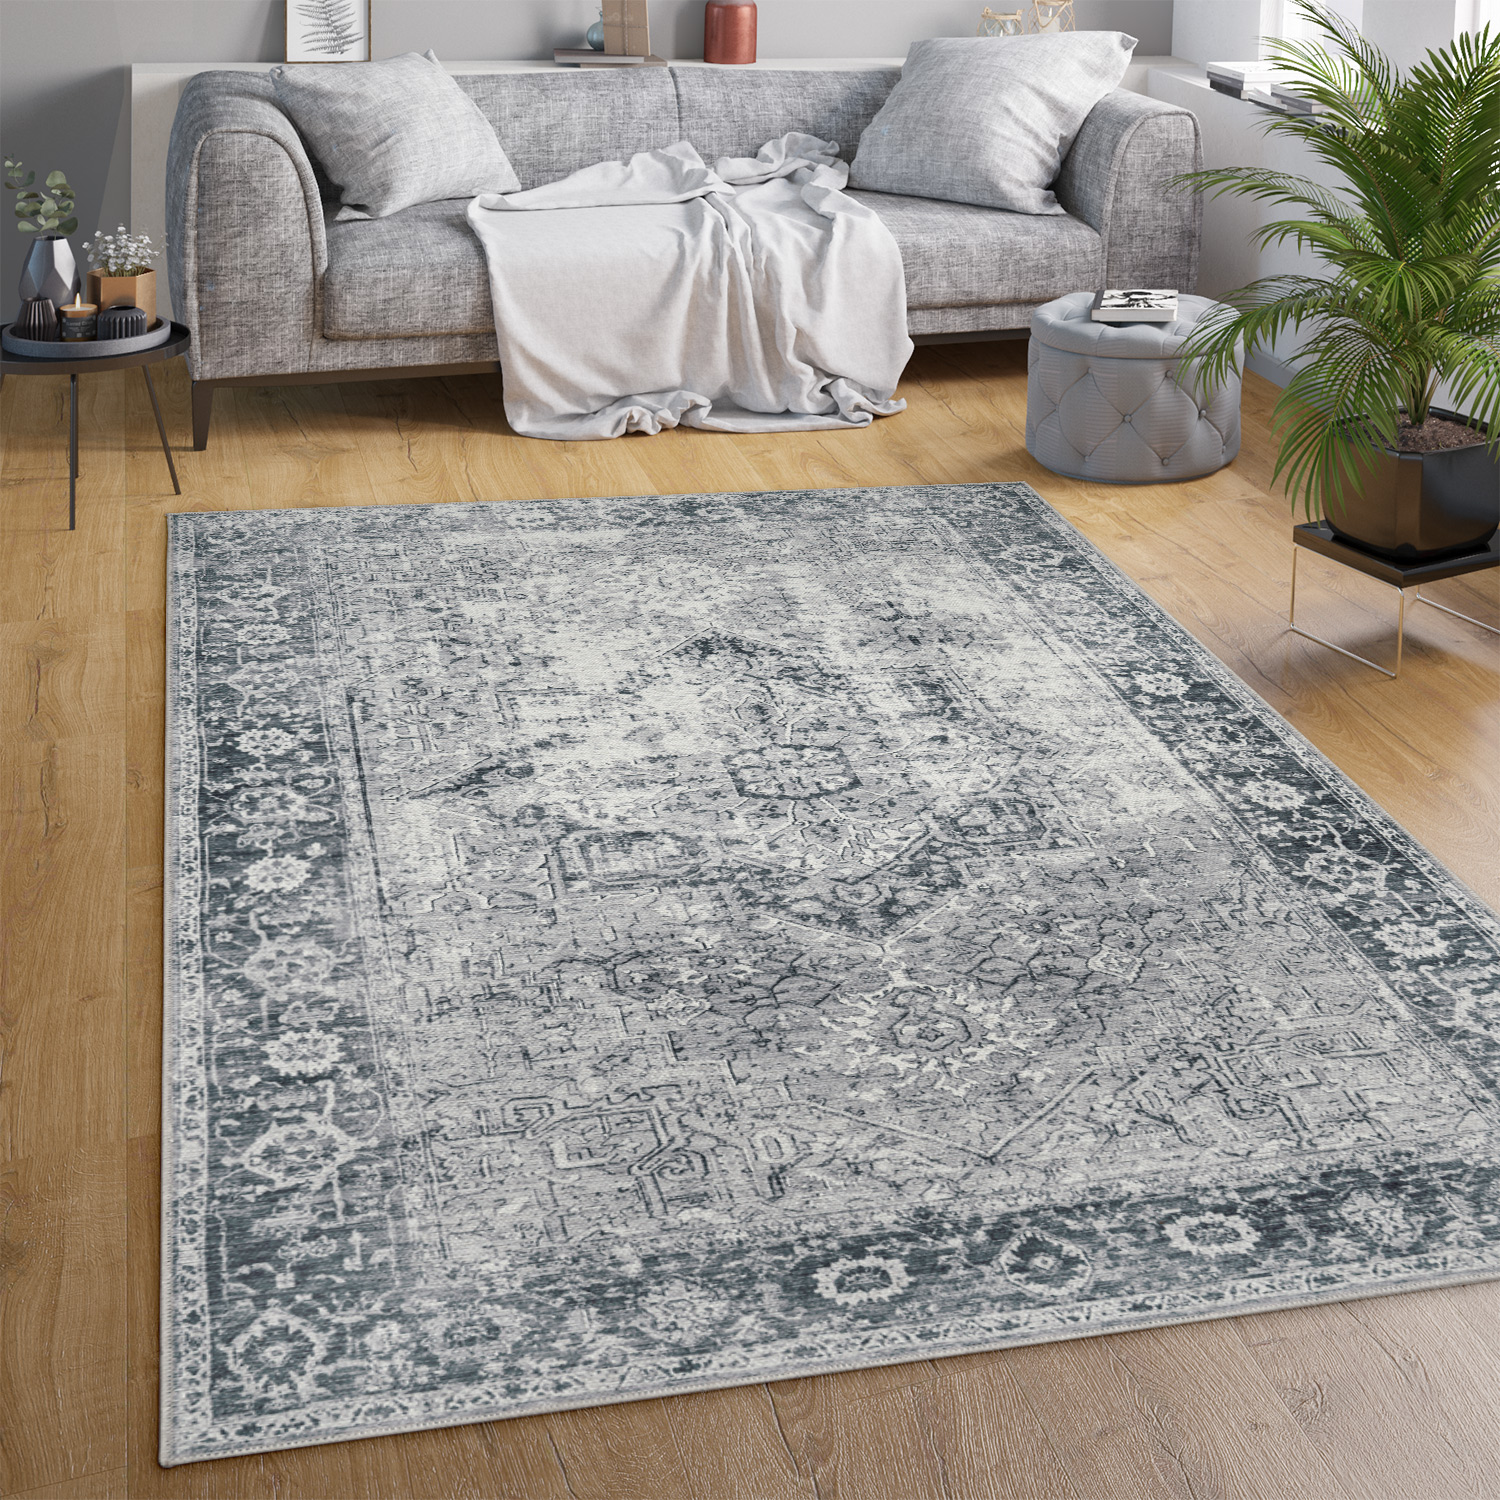 Teppich Esszimmer Vintage Marokkanisches Design Grau Orientalisch